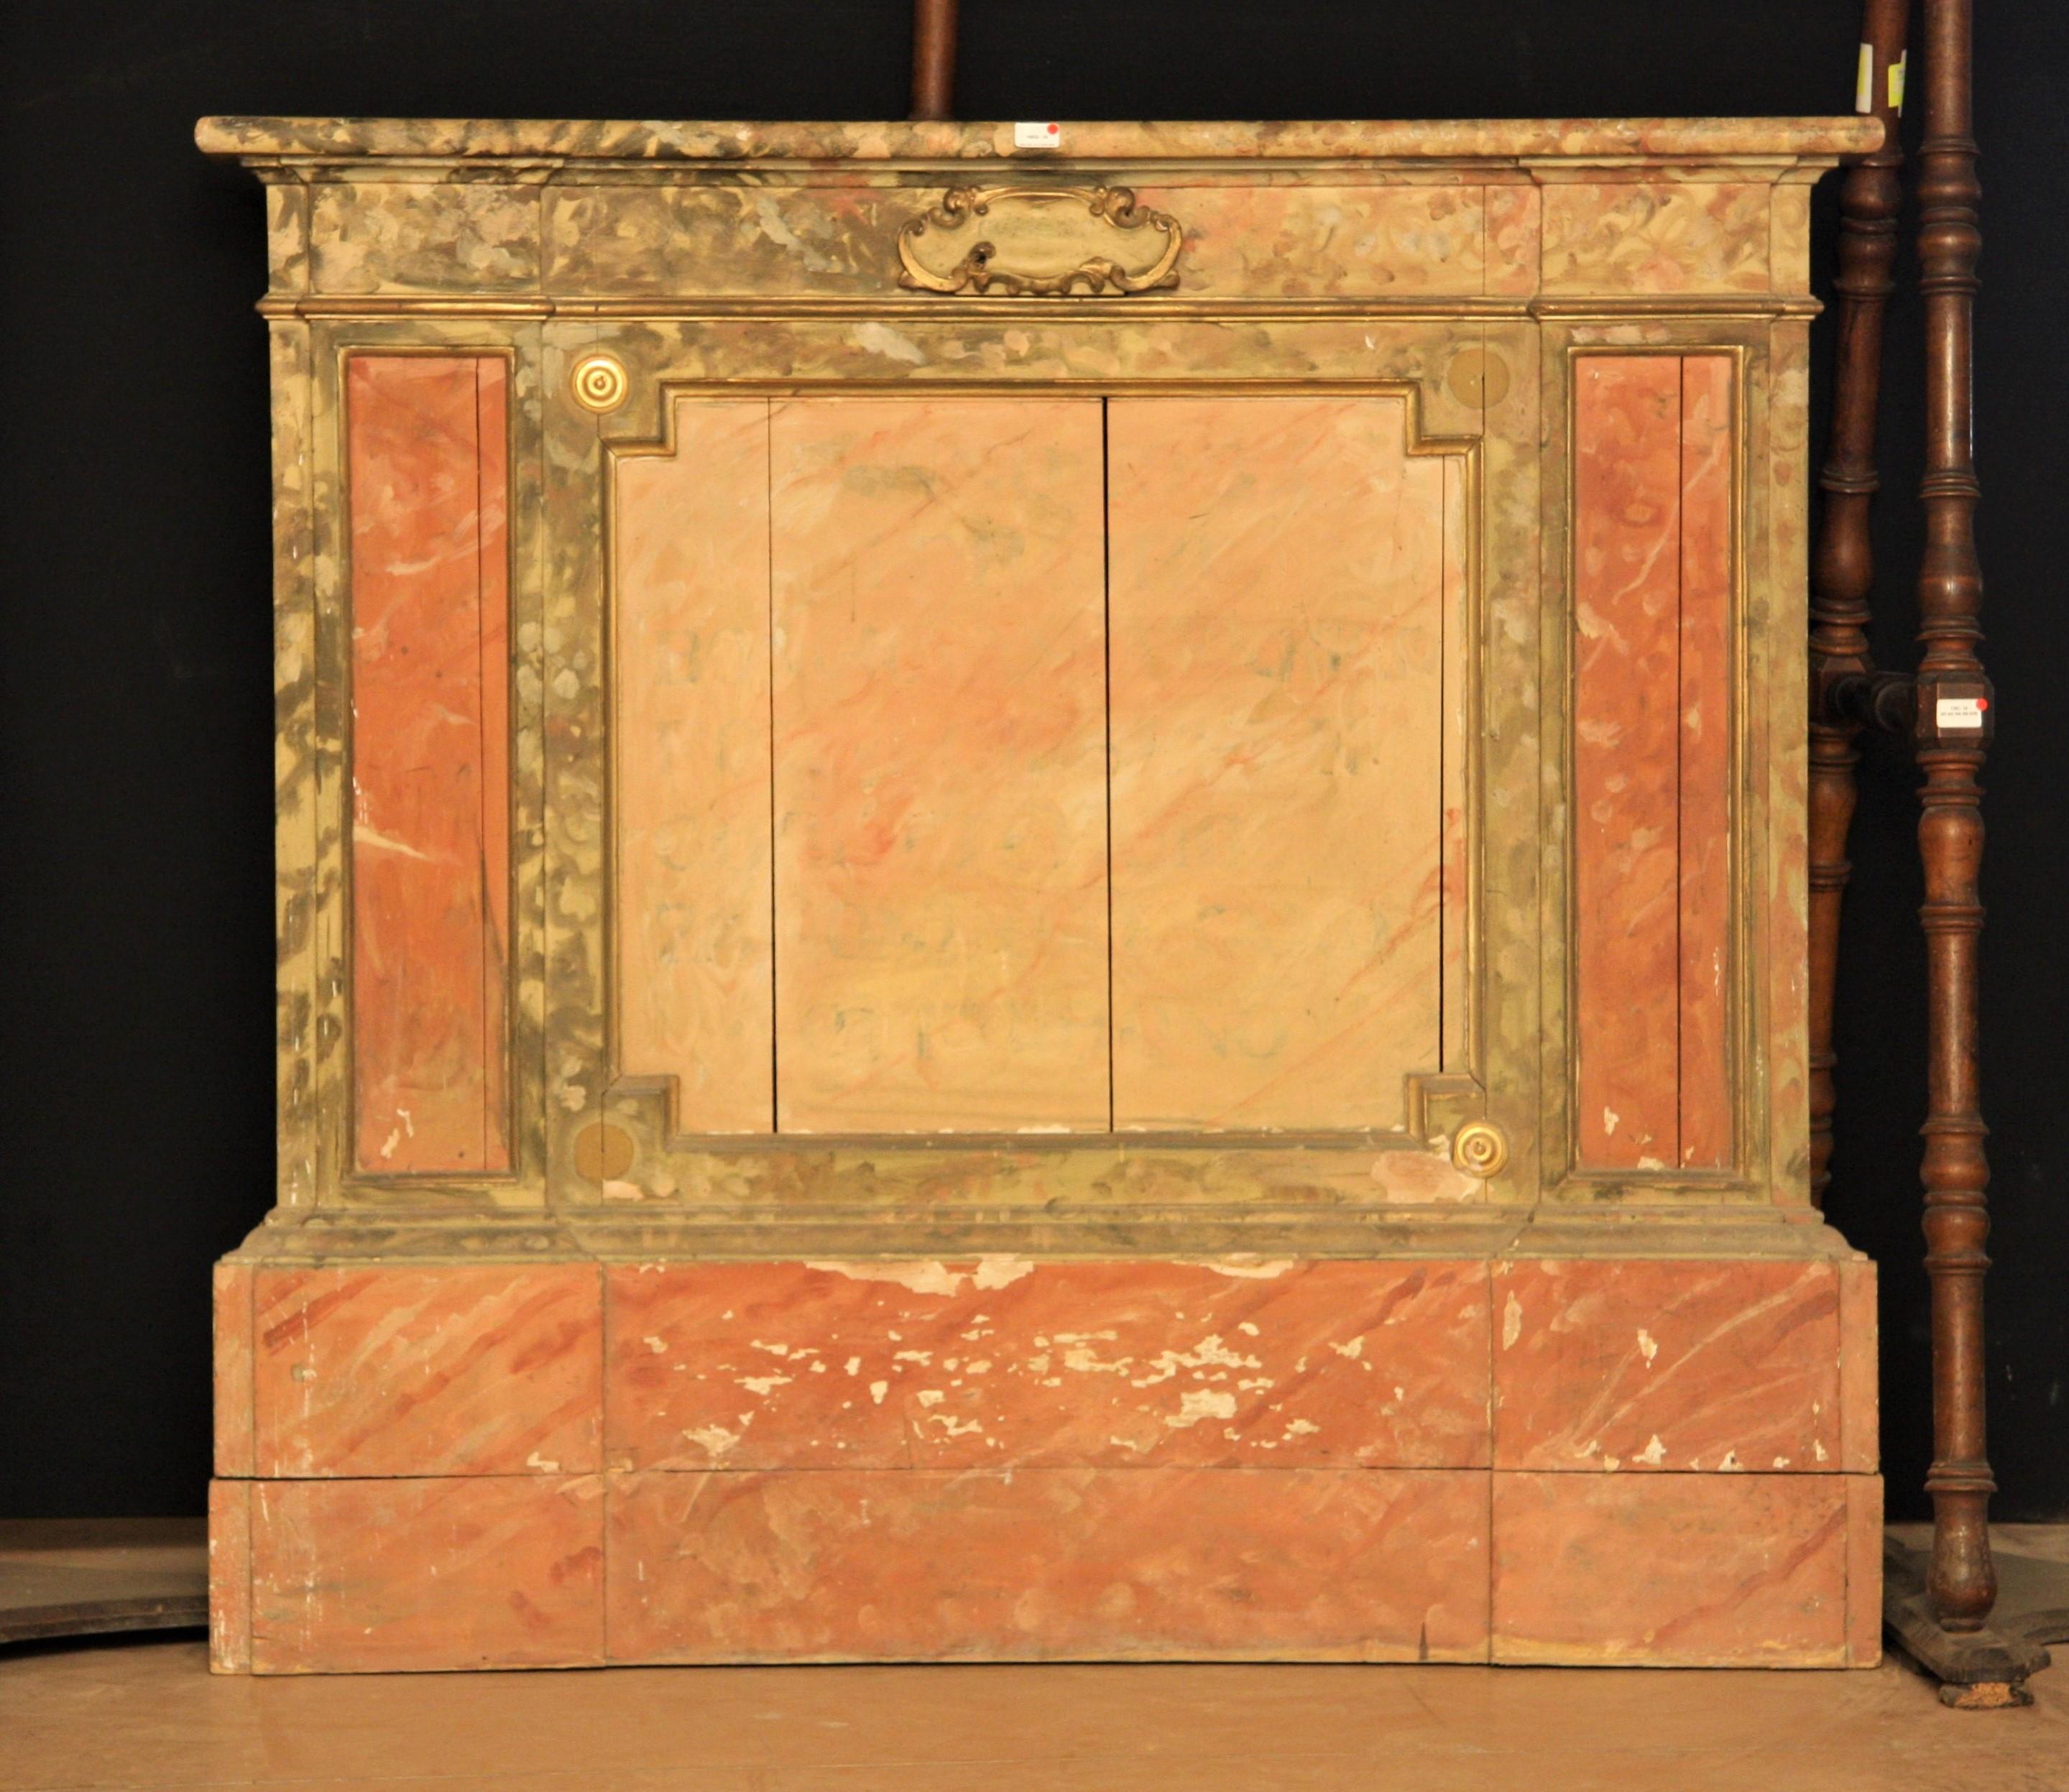 Almosenschale
Dekoratives Wandelement aus lackiertem Pappelholz mit Marmorimitation, mit geschnitzter Kartusche, in der sich eine Schublade für 